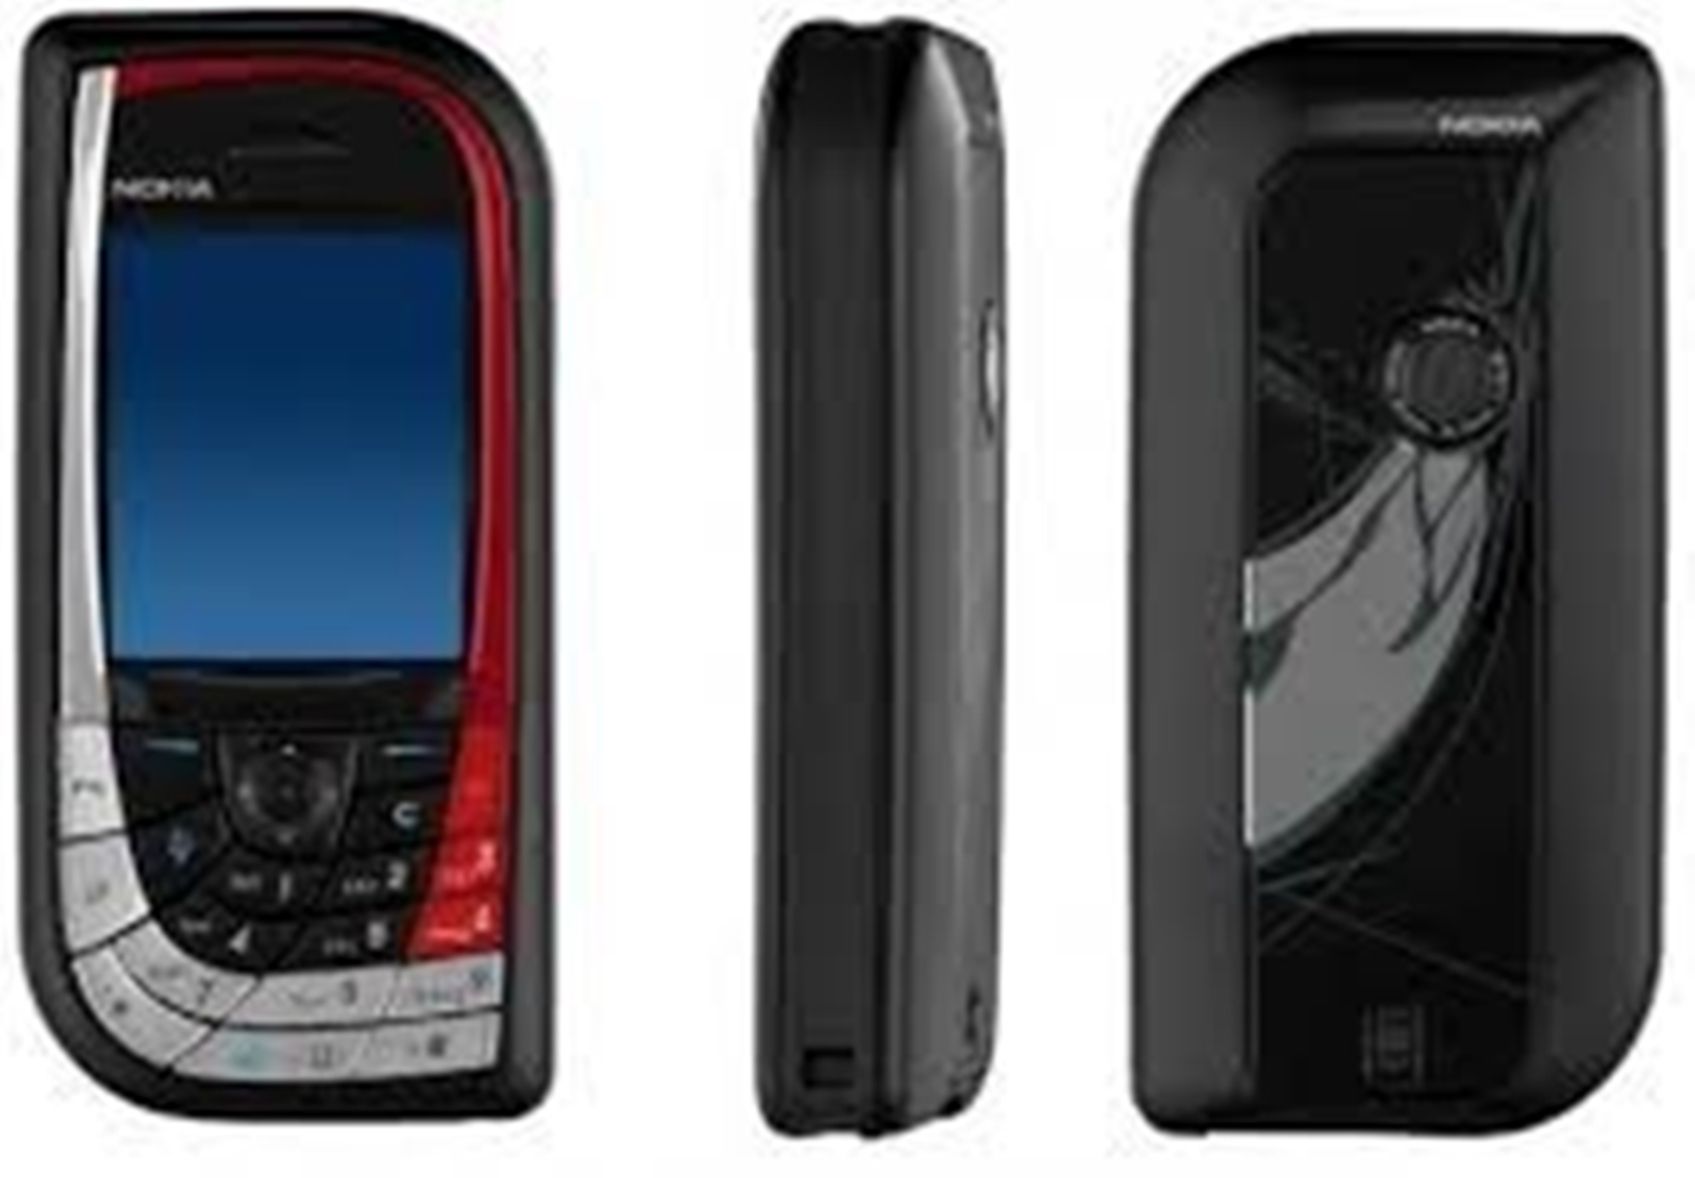 Nokia 7610.*/pulsk.com